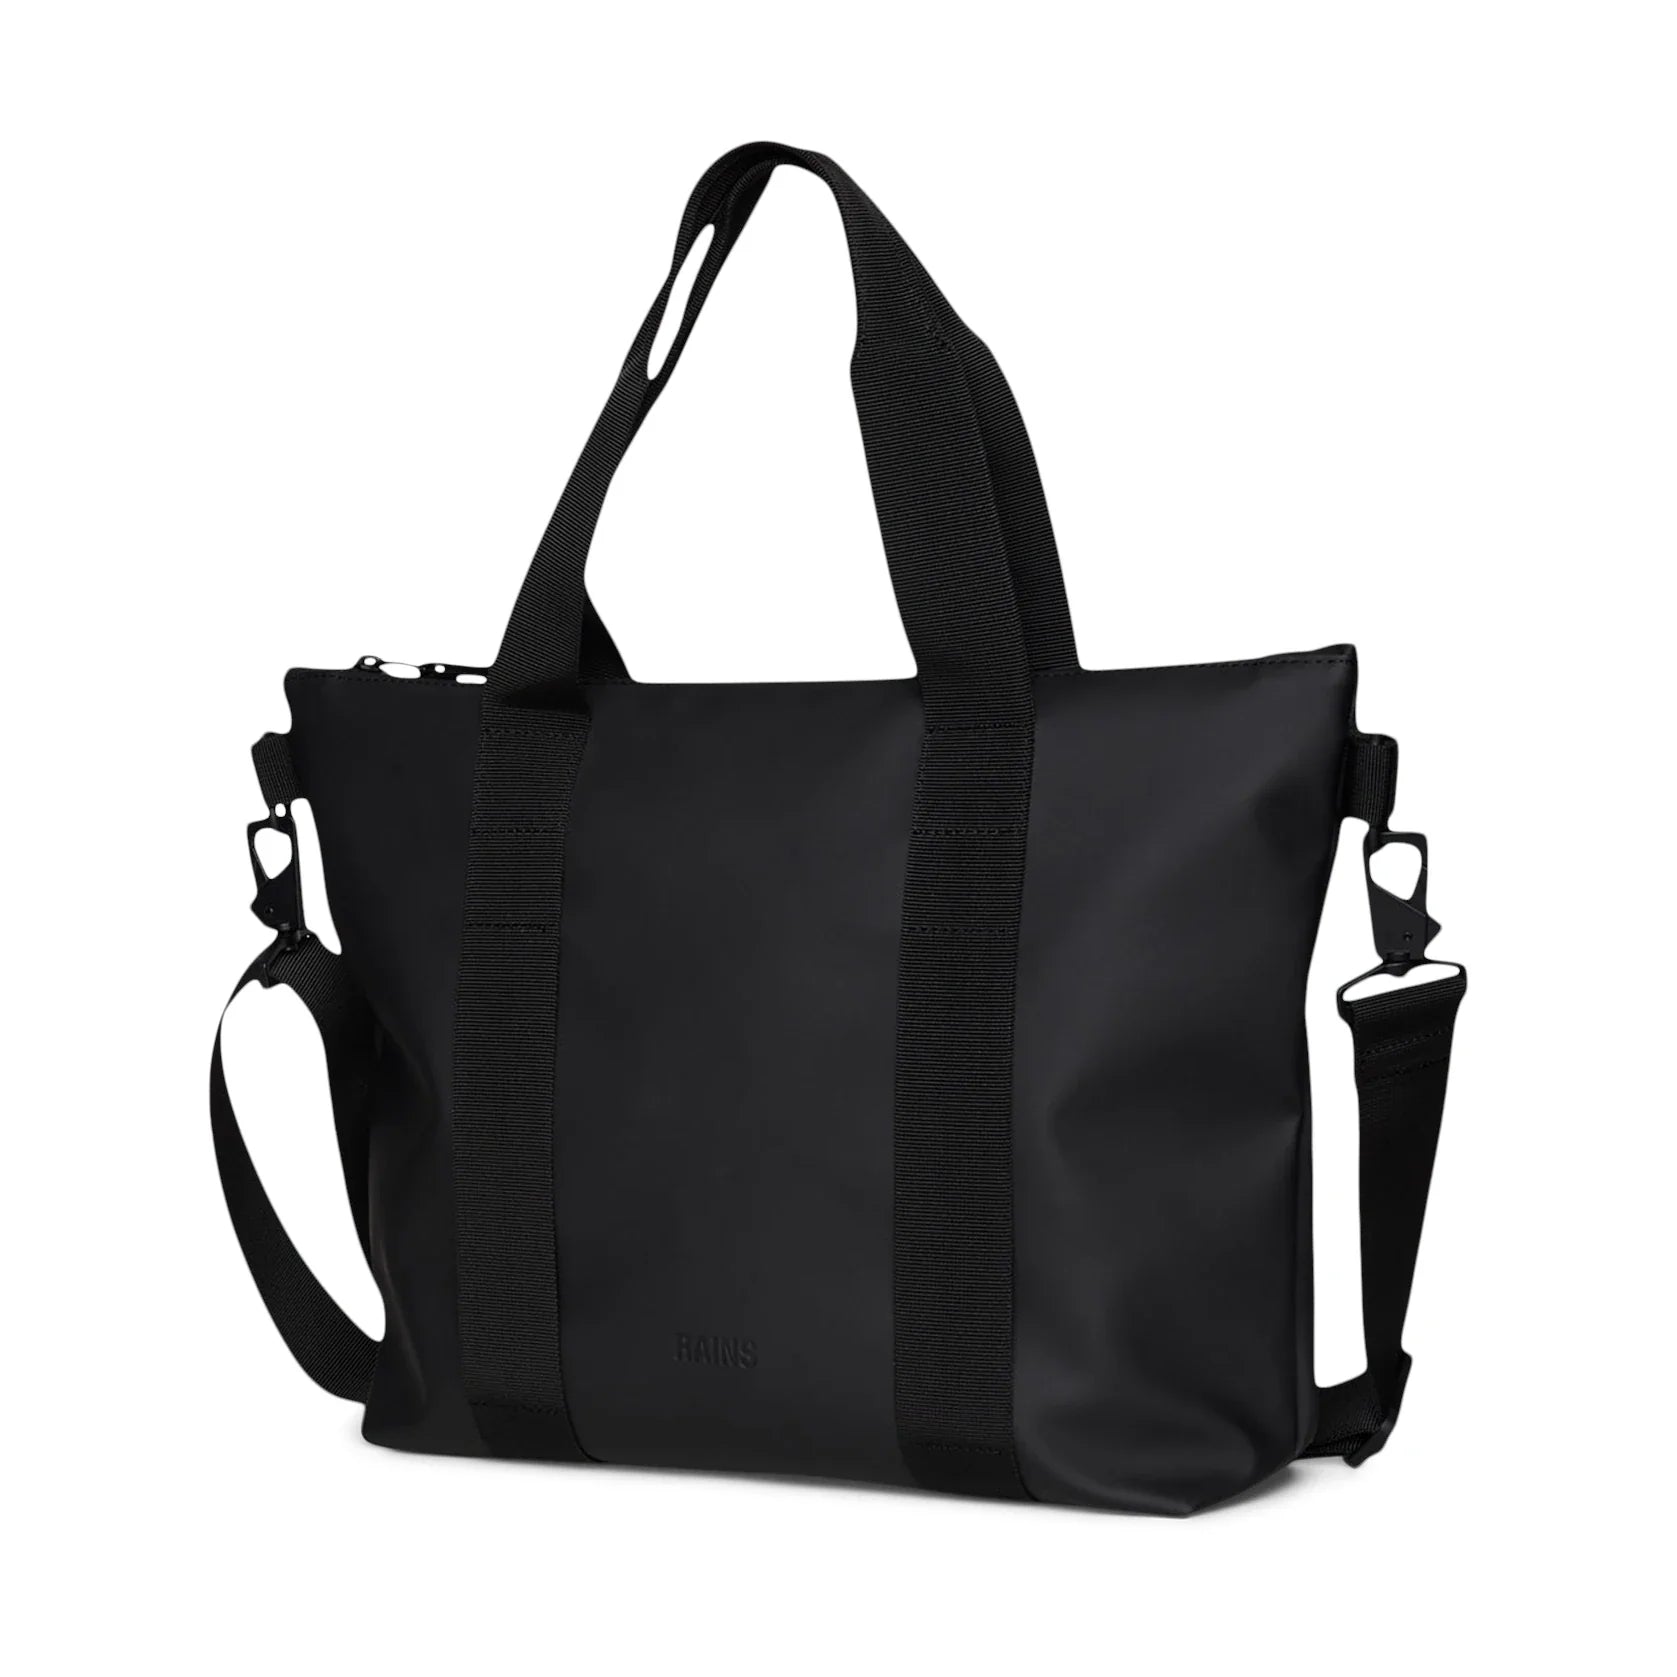 Tote Bag Micro W3 | Black | Waterproof | by Rains - Lifestory